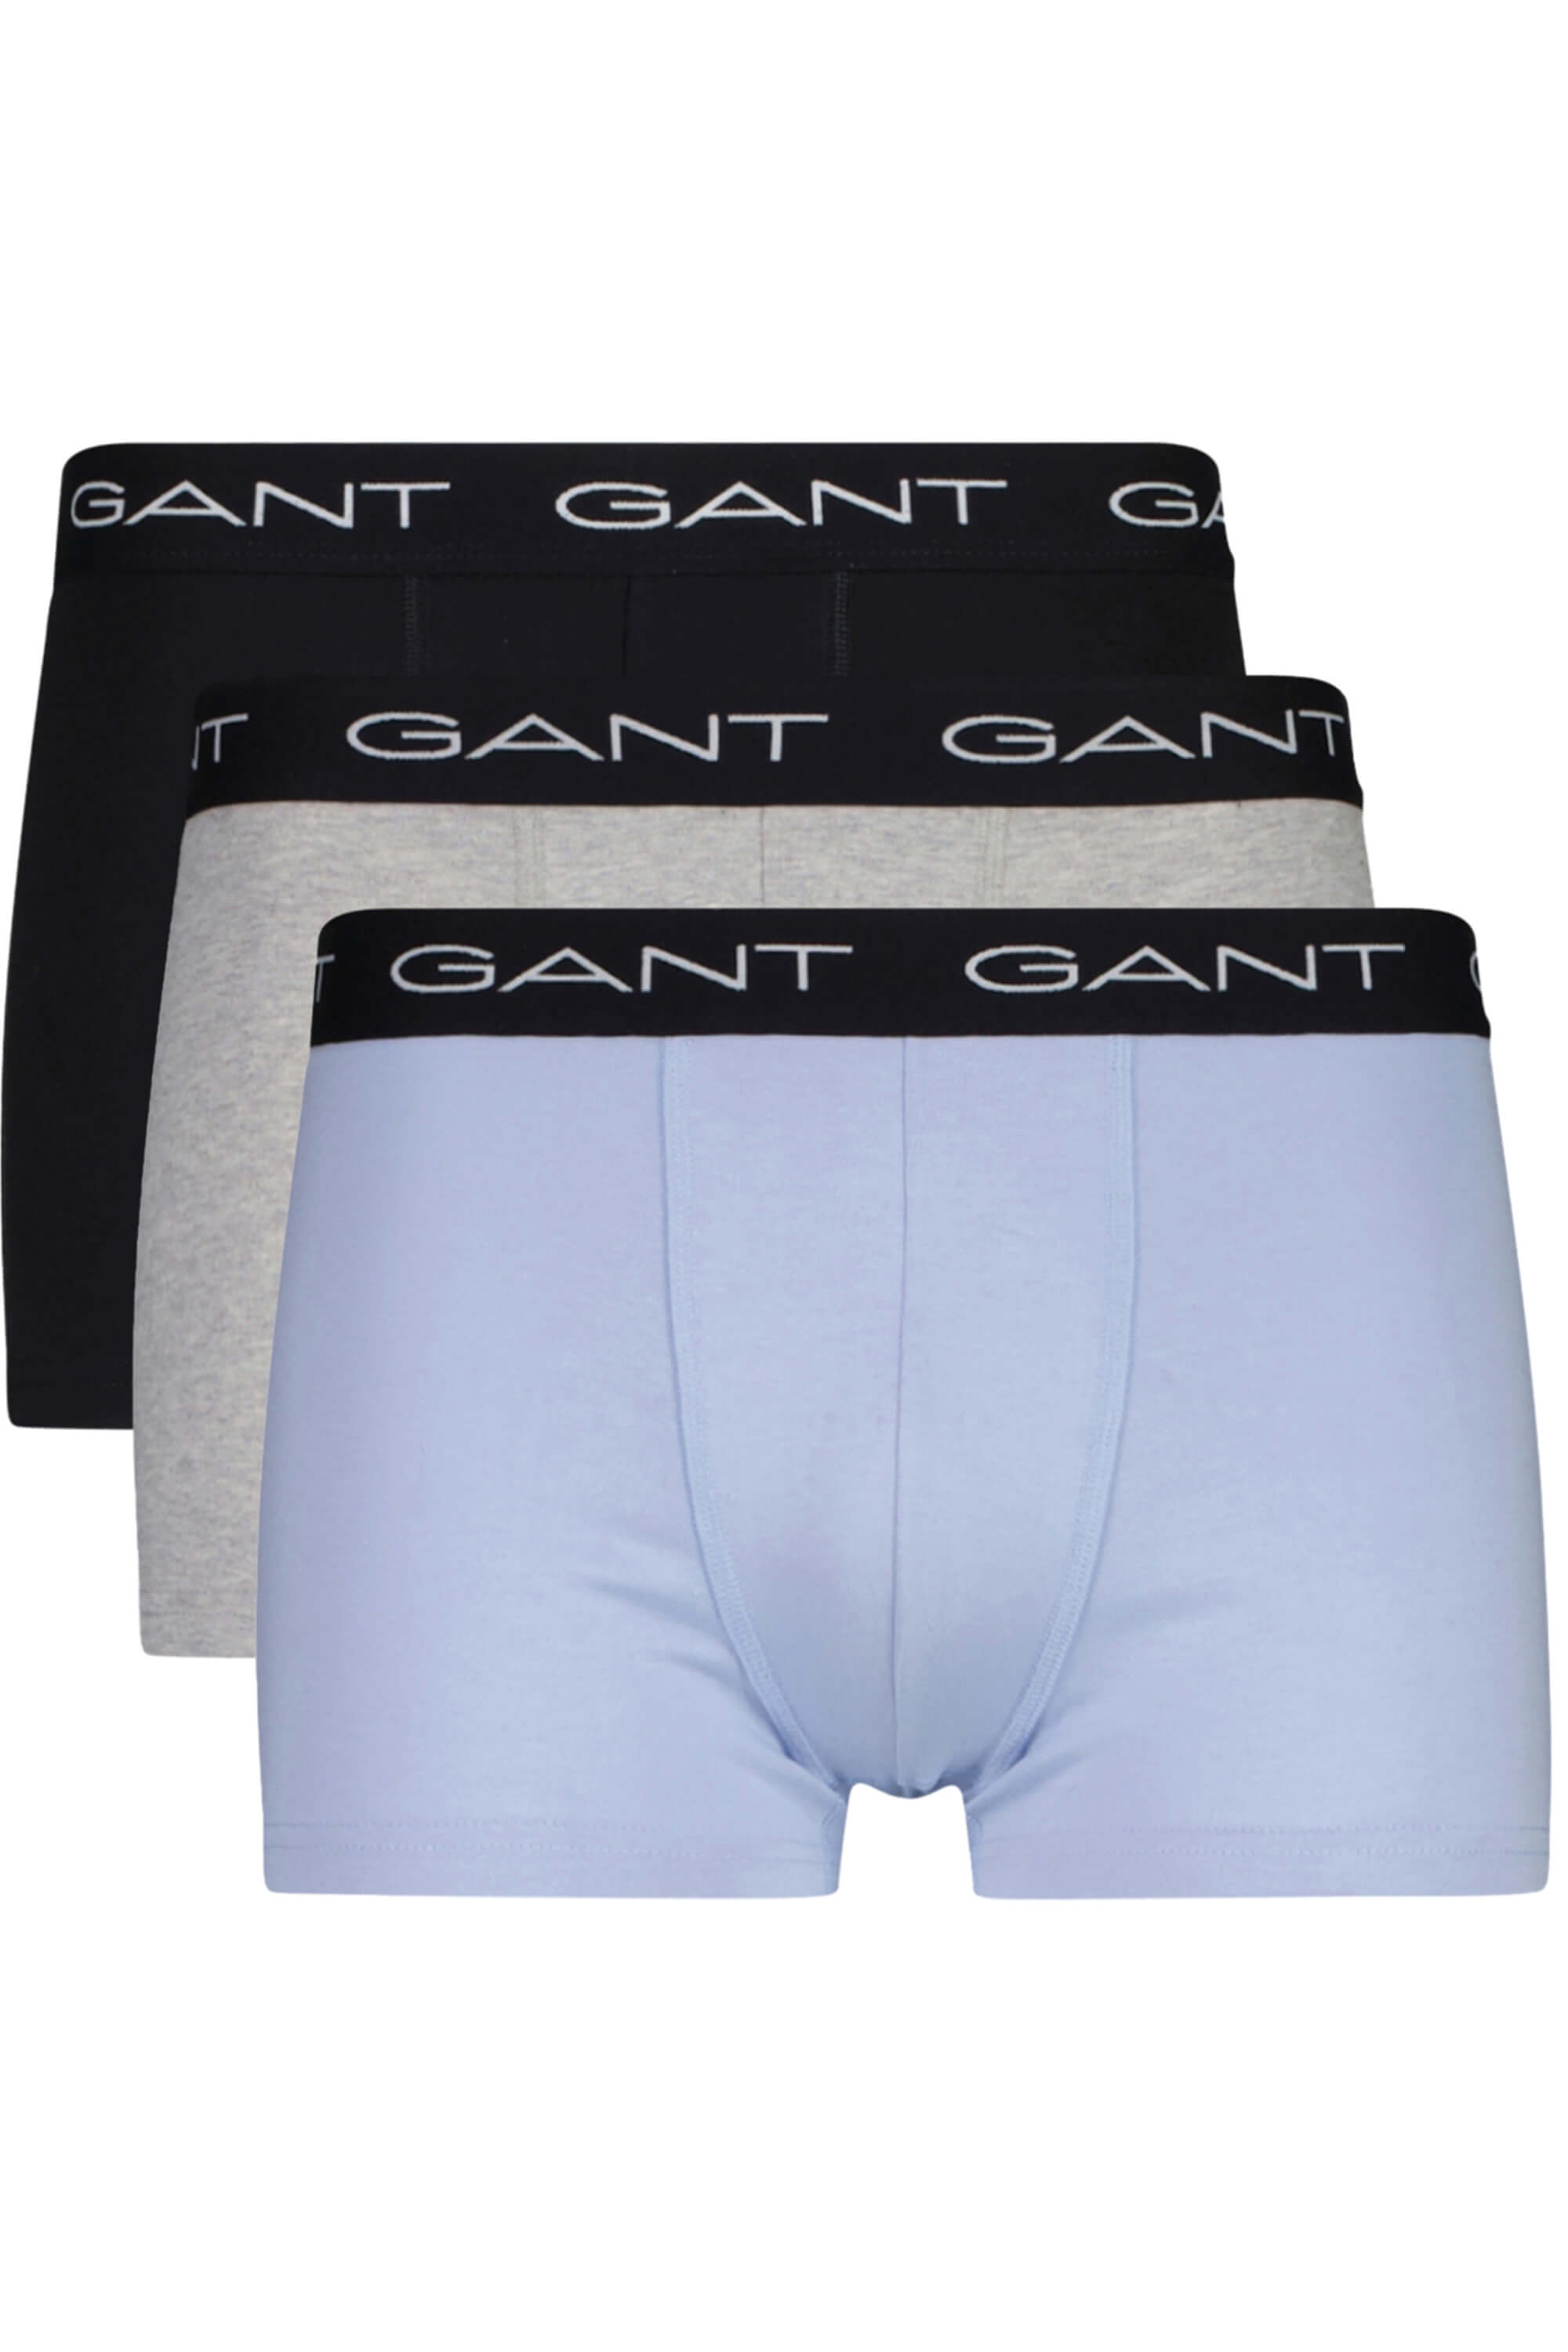 Gant Season Trunks 